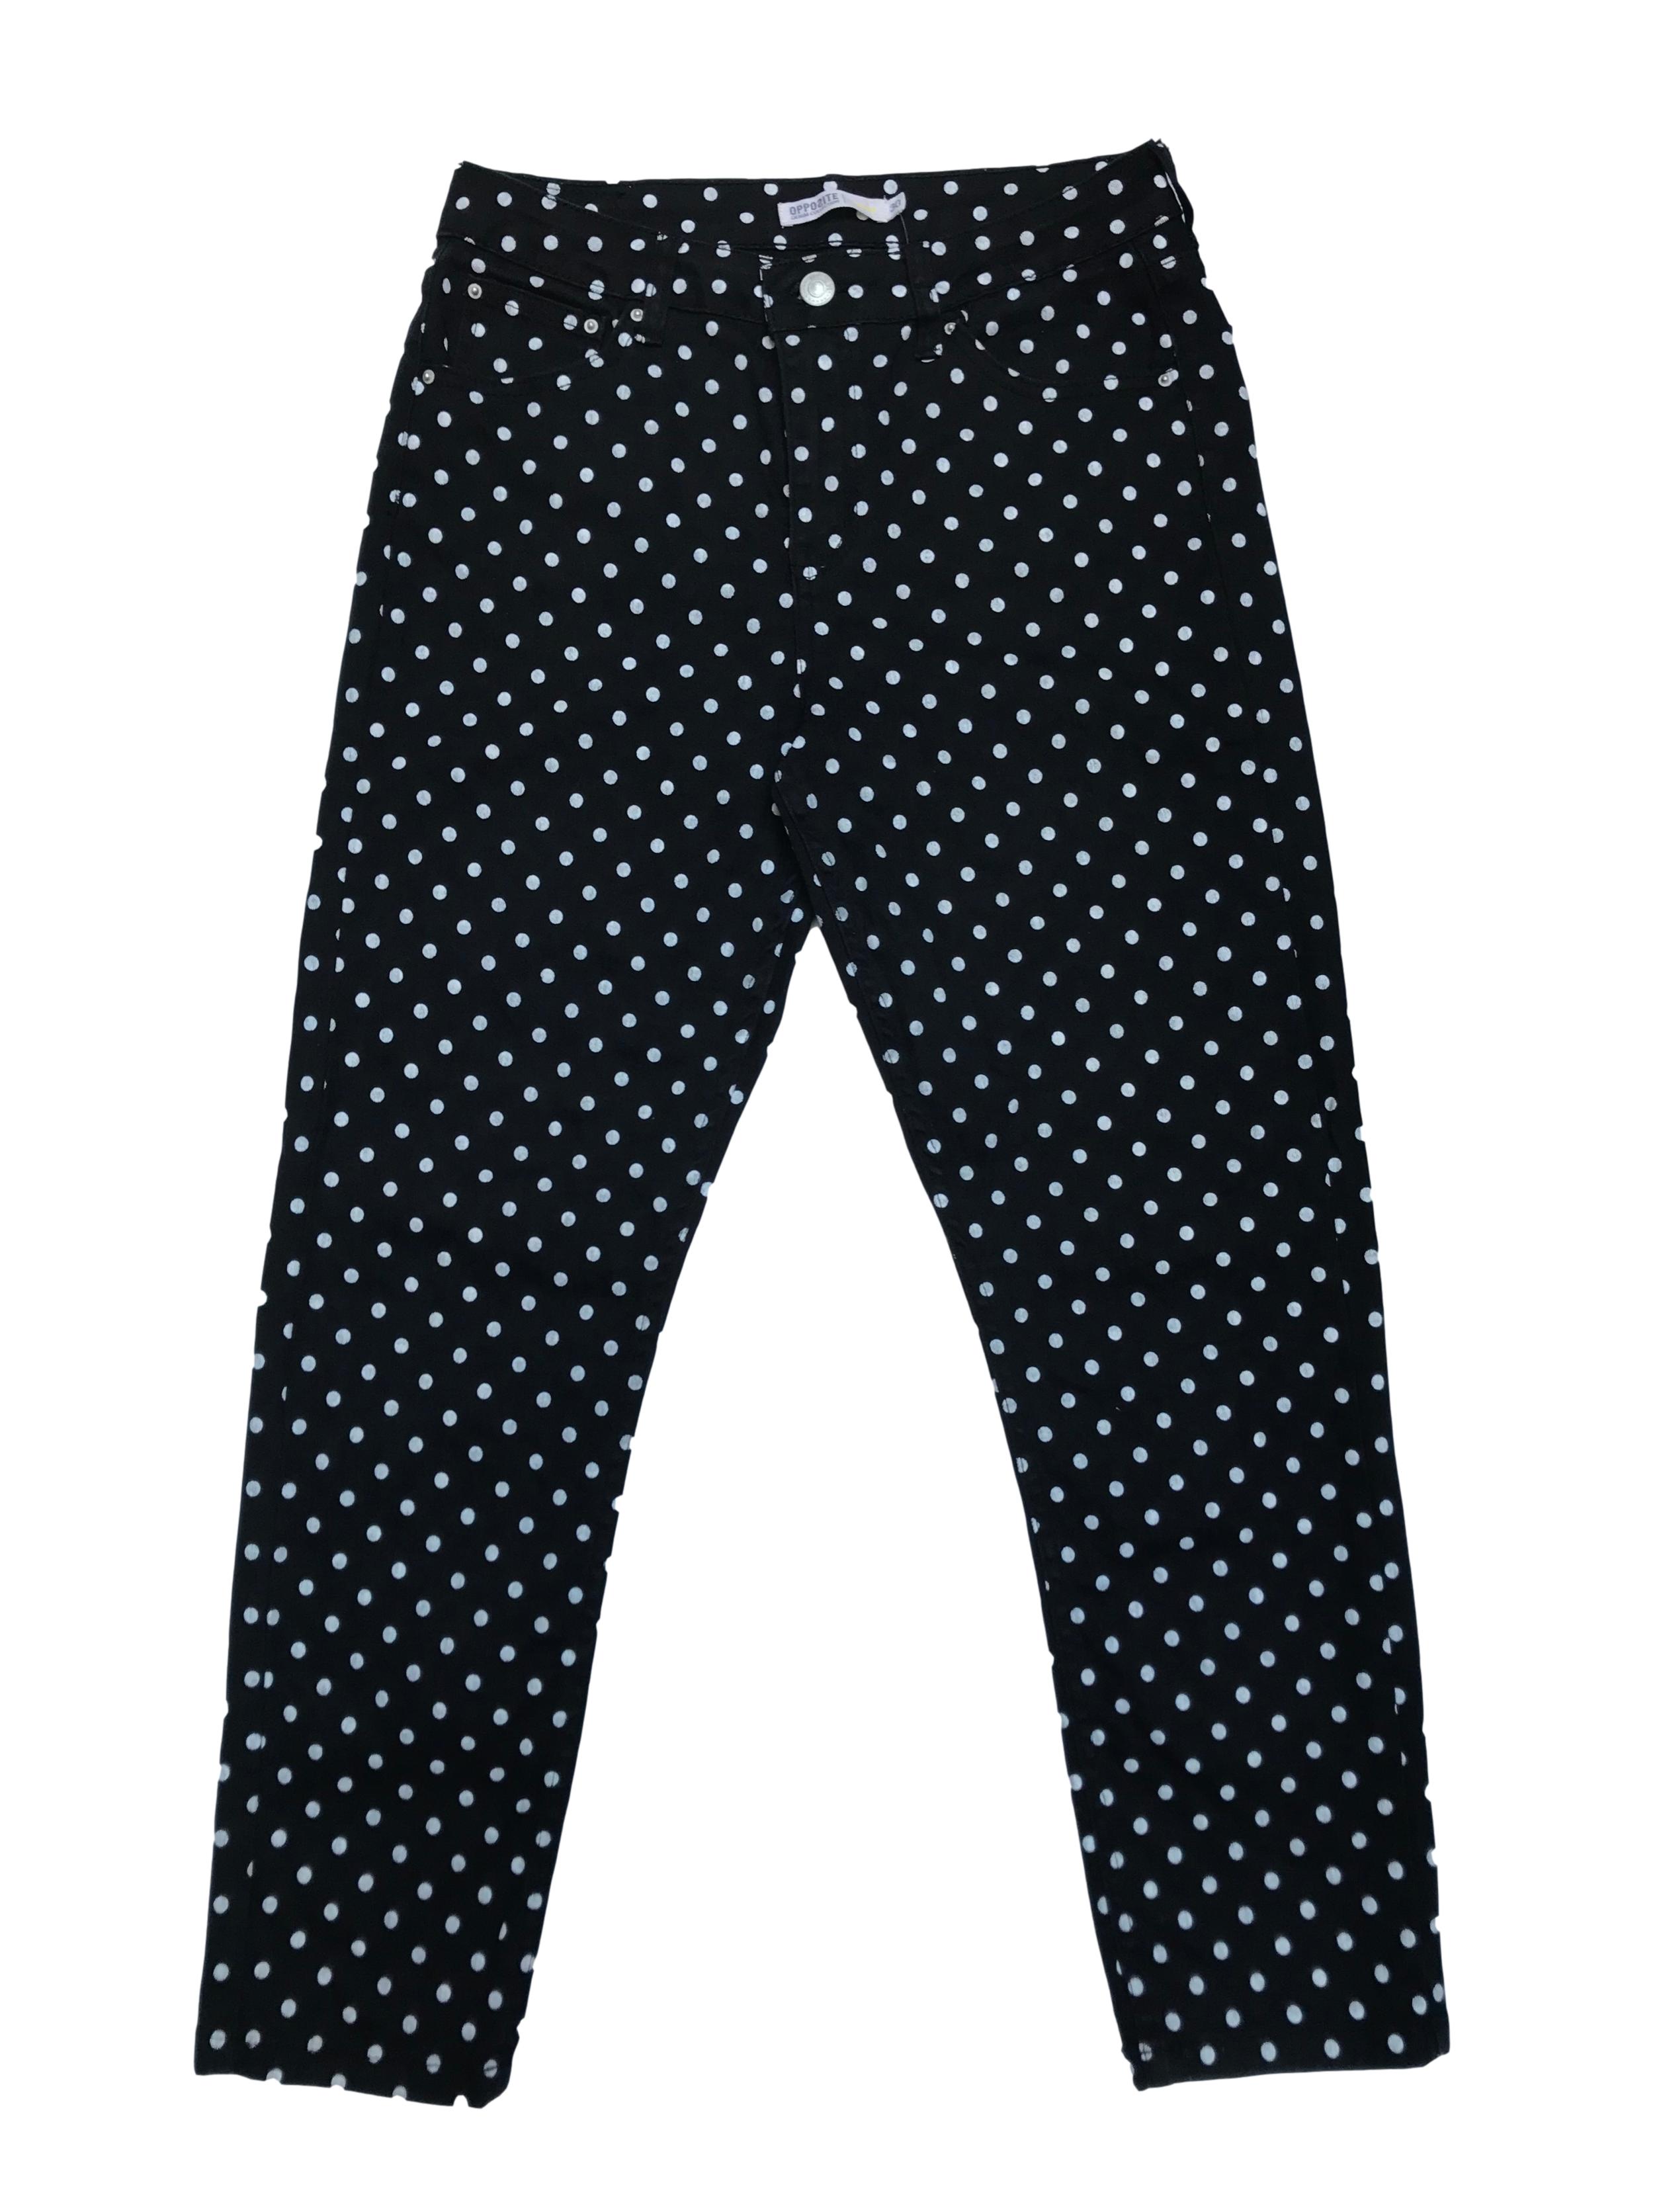 Pantalón Opposite a la cintura, corte mom jean negro con estampado de lunares blancos. Cintura 76 cm